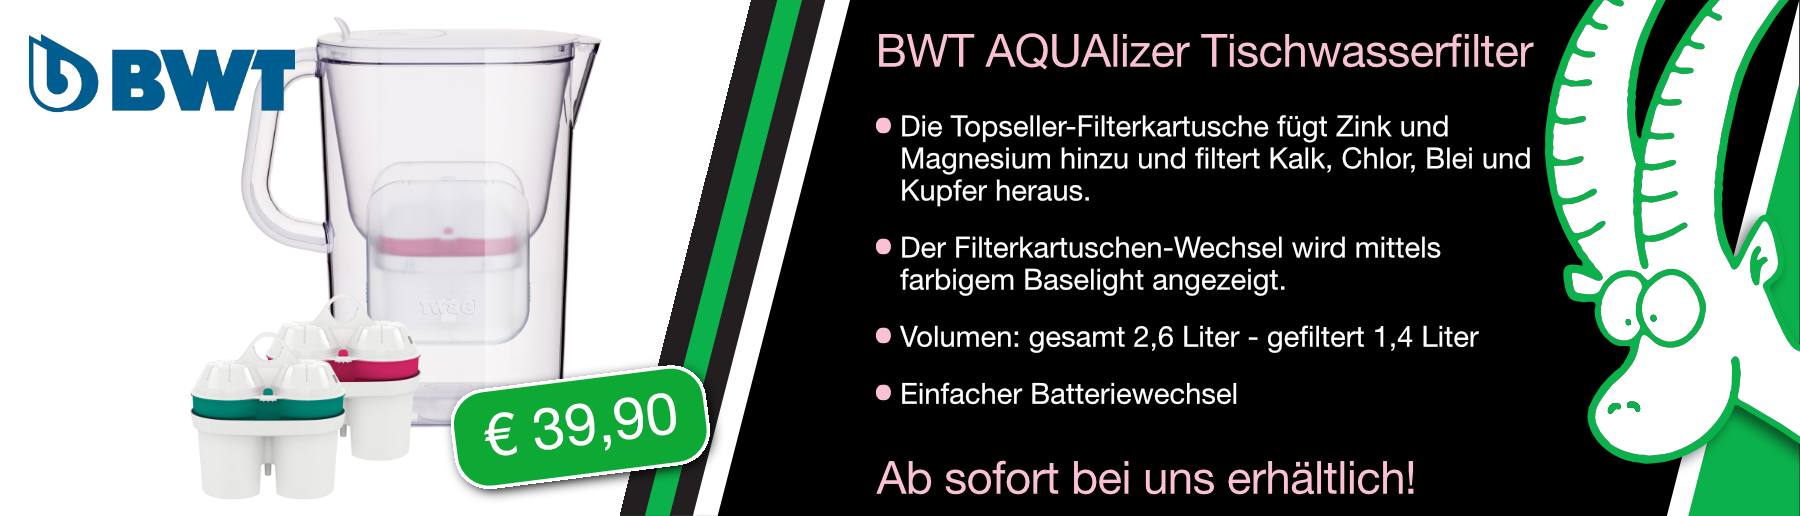 BWT AQUAlizer Tischwasserfilter